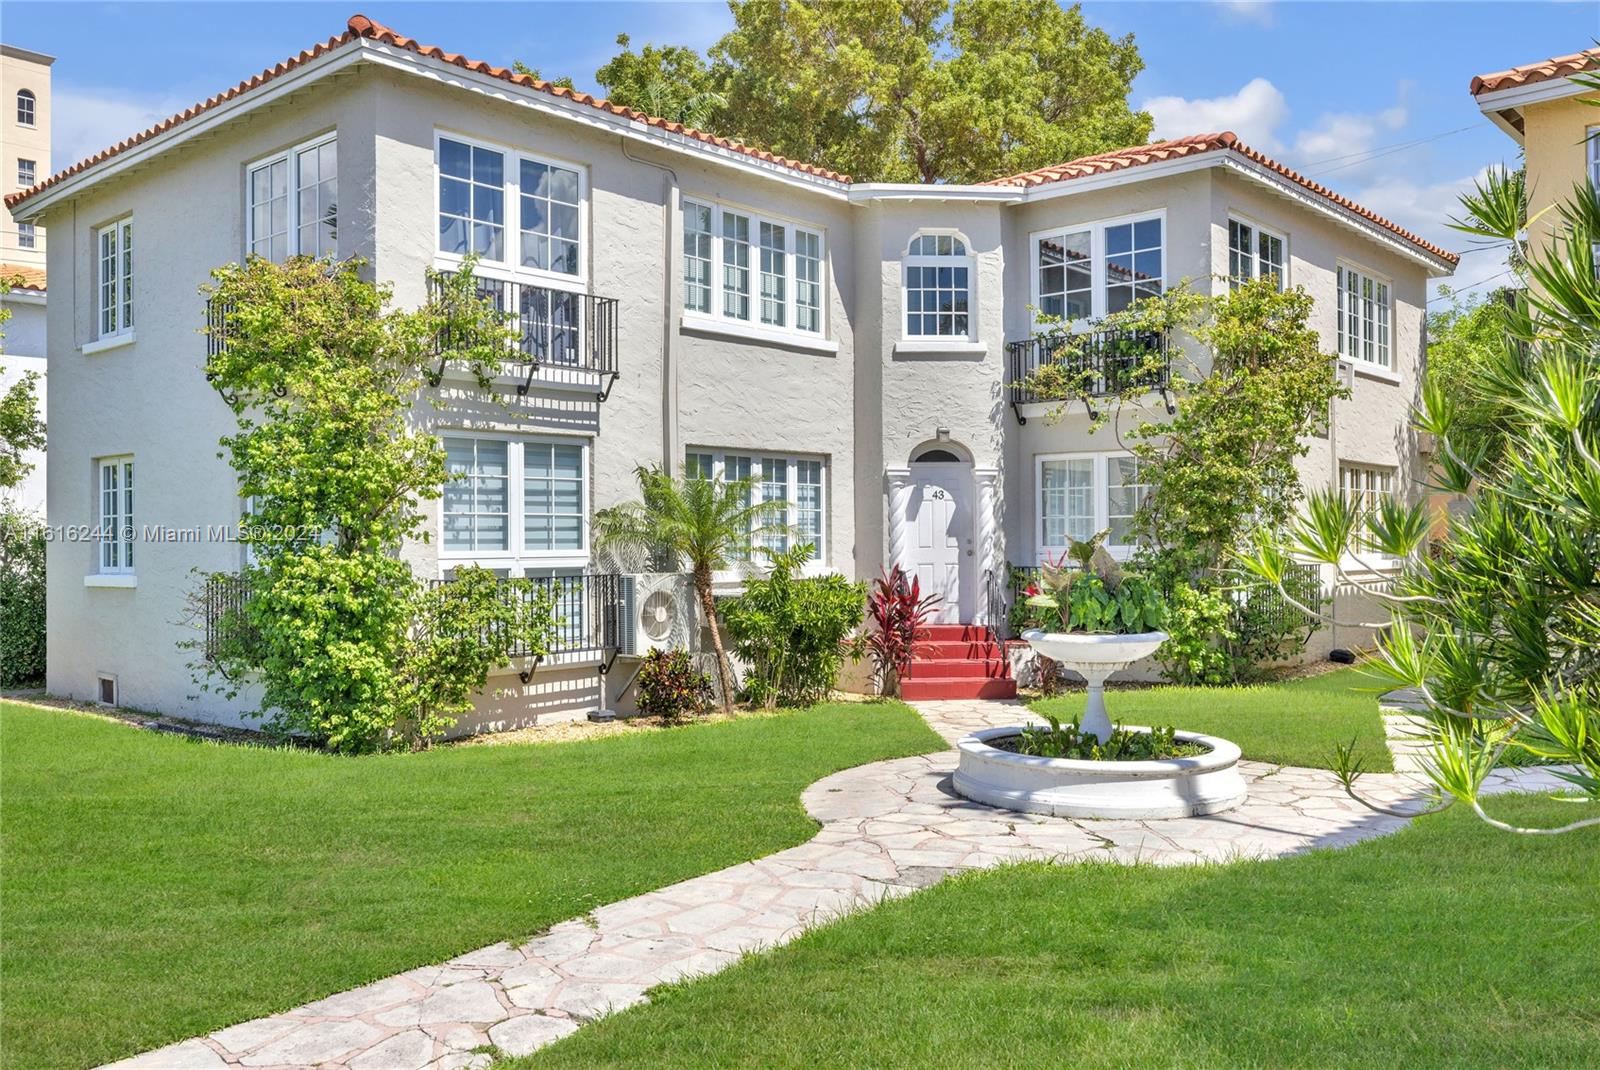 Rental Property at 43 Sidonia Ave, Coral Gables, Broward County, Florida -  - $1,550,000 MO.